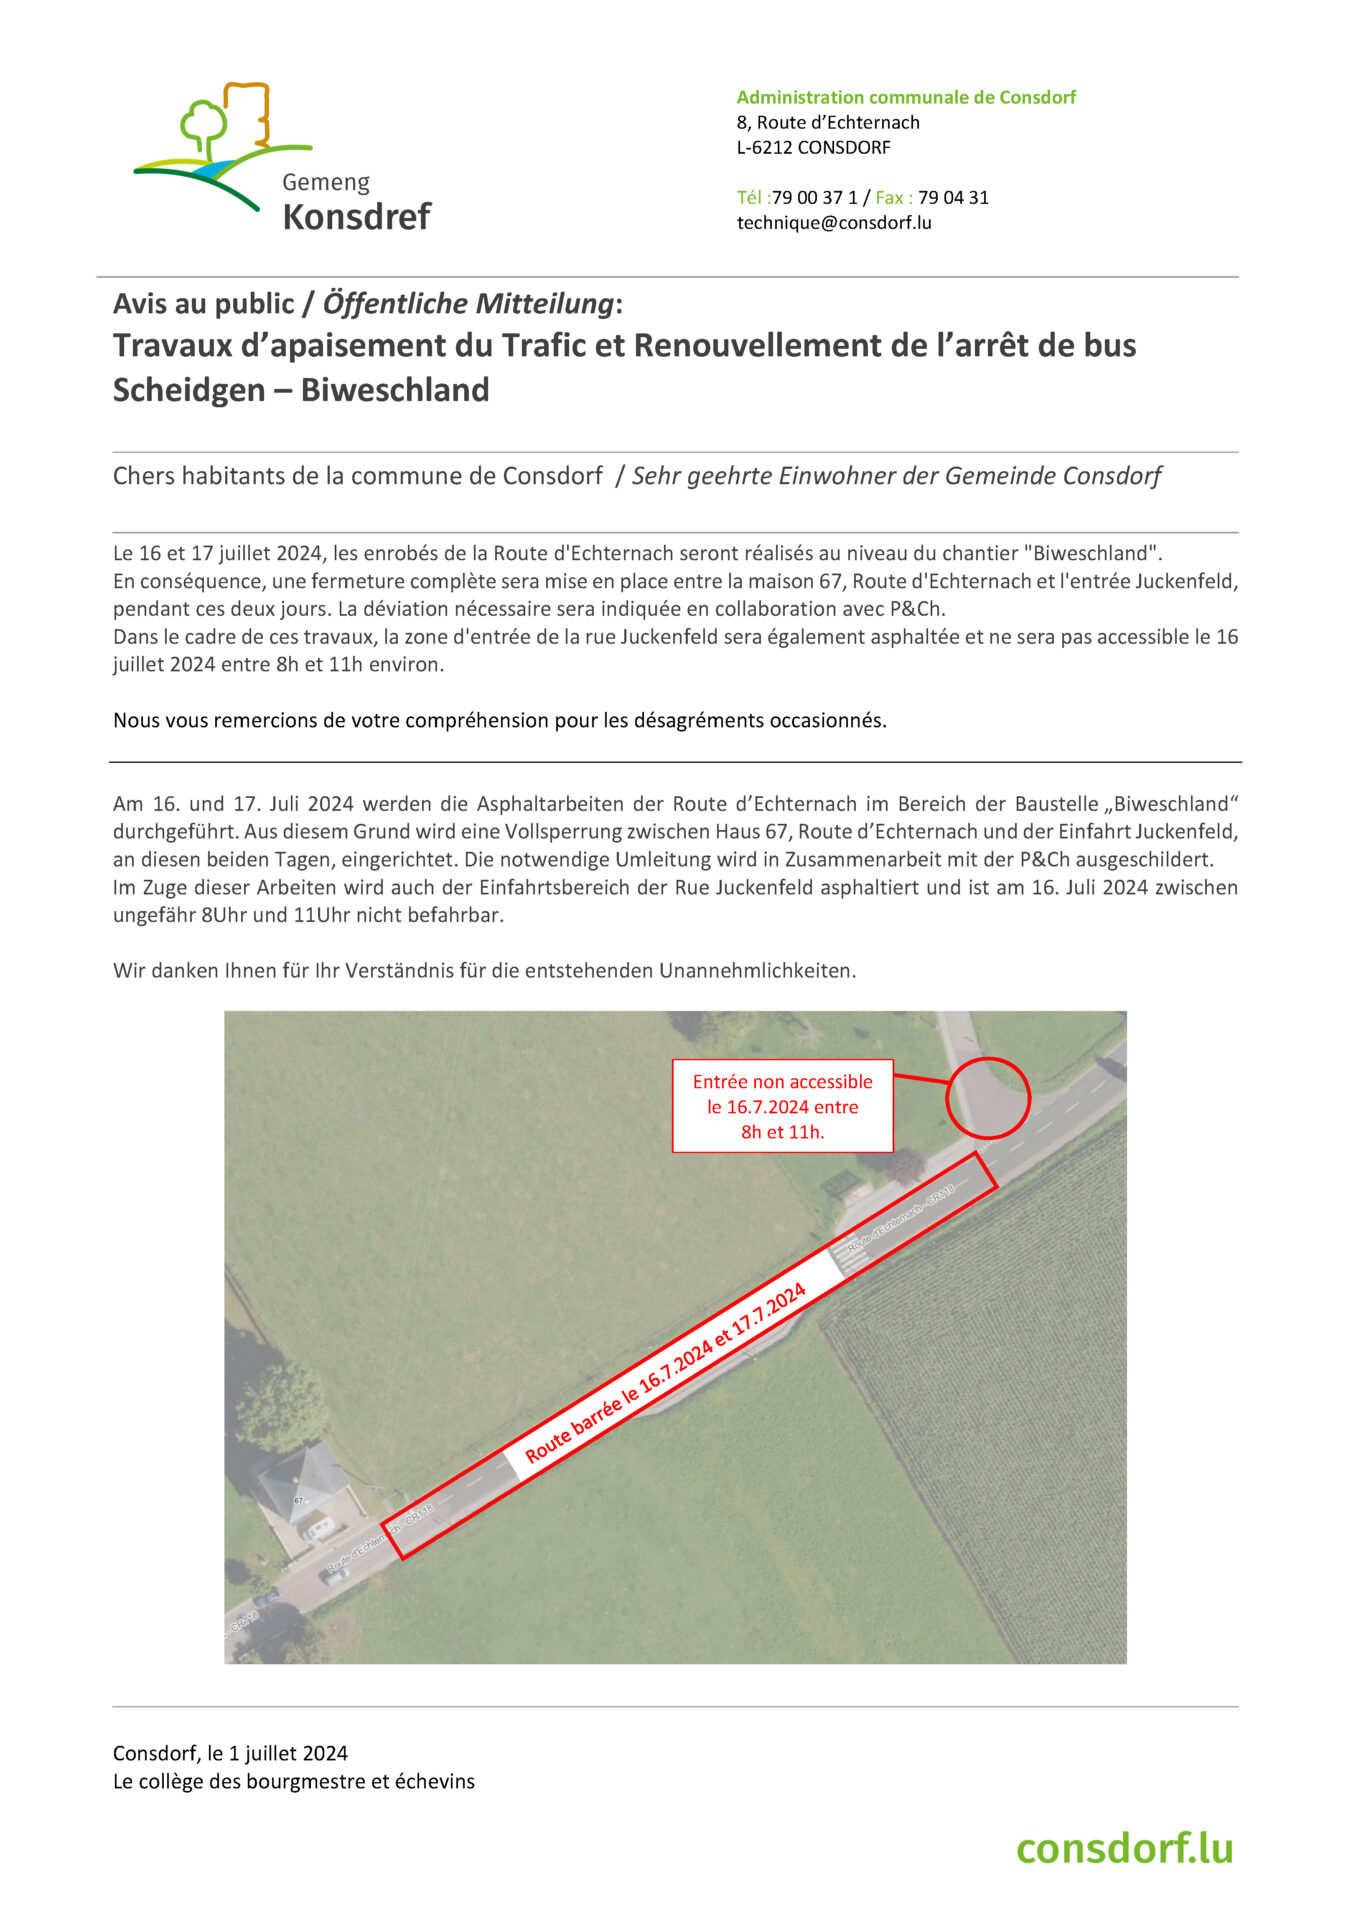 Avis au public / Öffentliche Mitteilung: Travaux d’apaisement du Trafic et Renouvellement de l’arrêt de bus Scheidgen – Biweschland